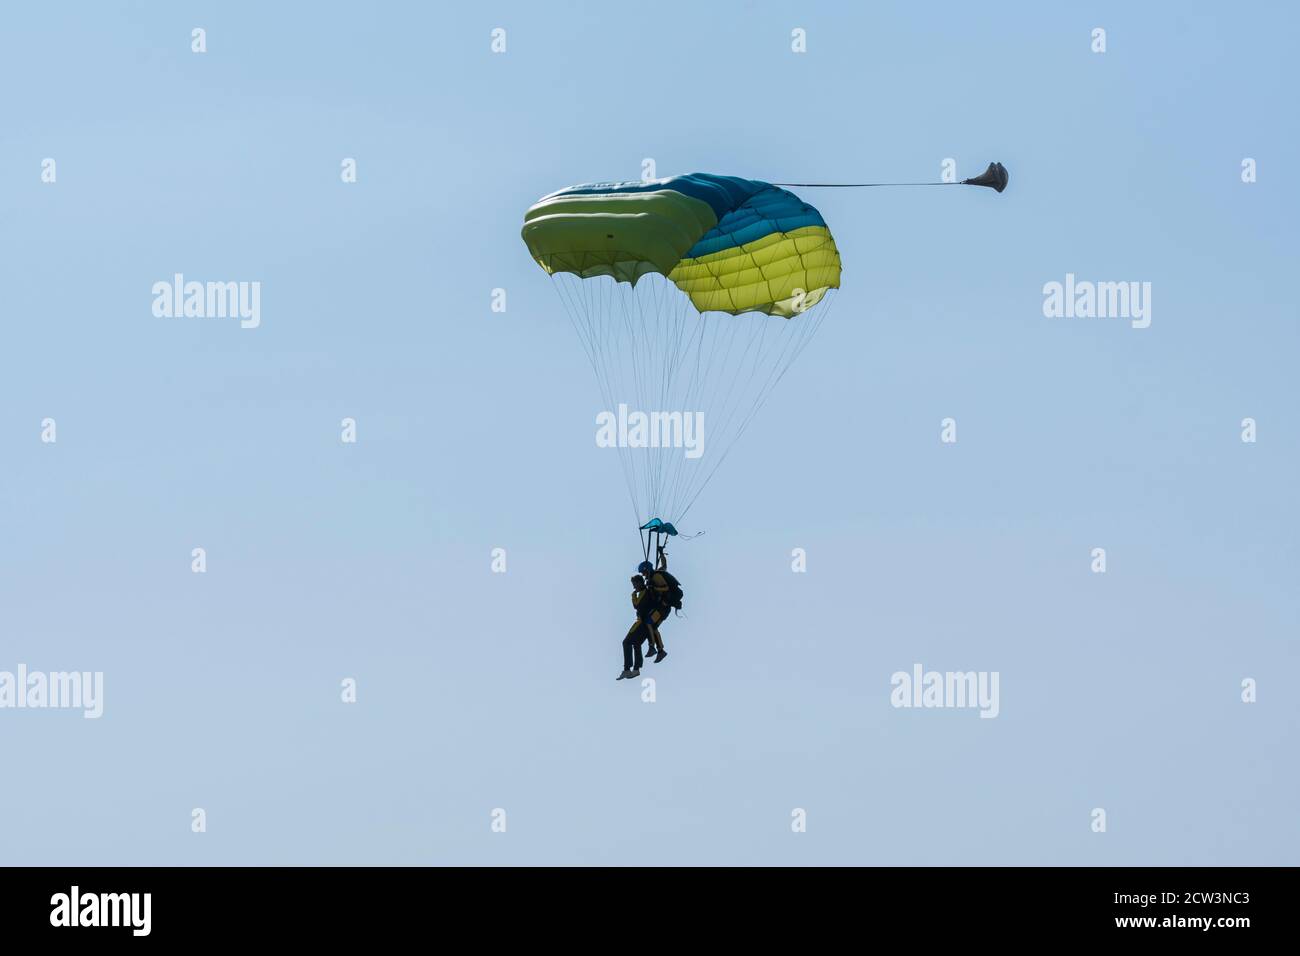 Saut en parachute en tandem. Silhouette de parachutiste volant dans un ciel bleu clair. Concepts de sport extrême et d'adrénaline. Banque D'Images